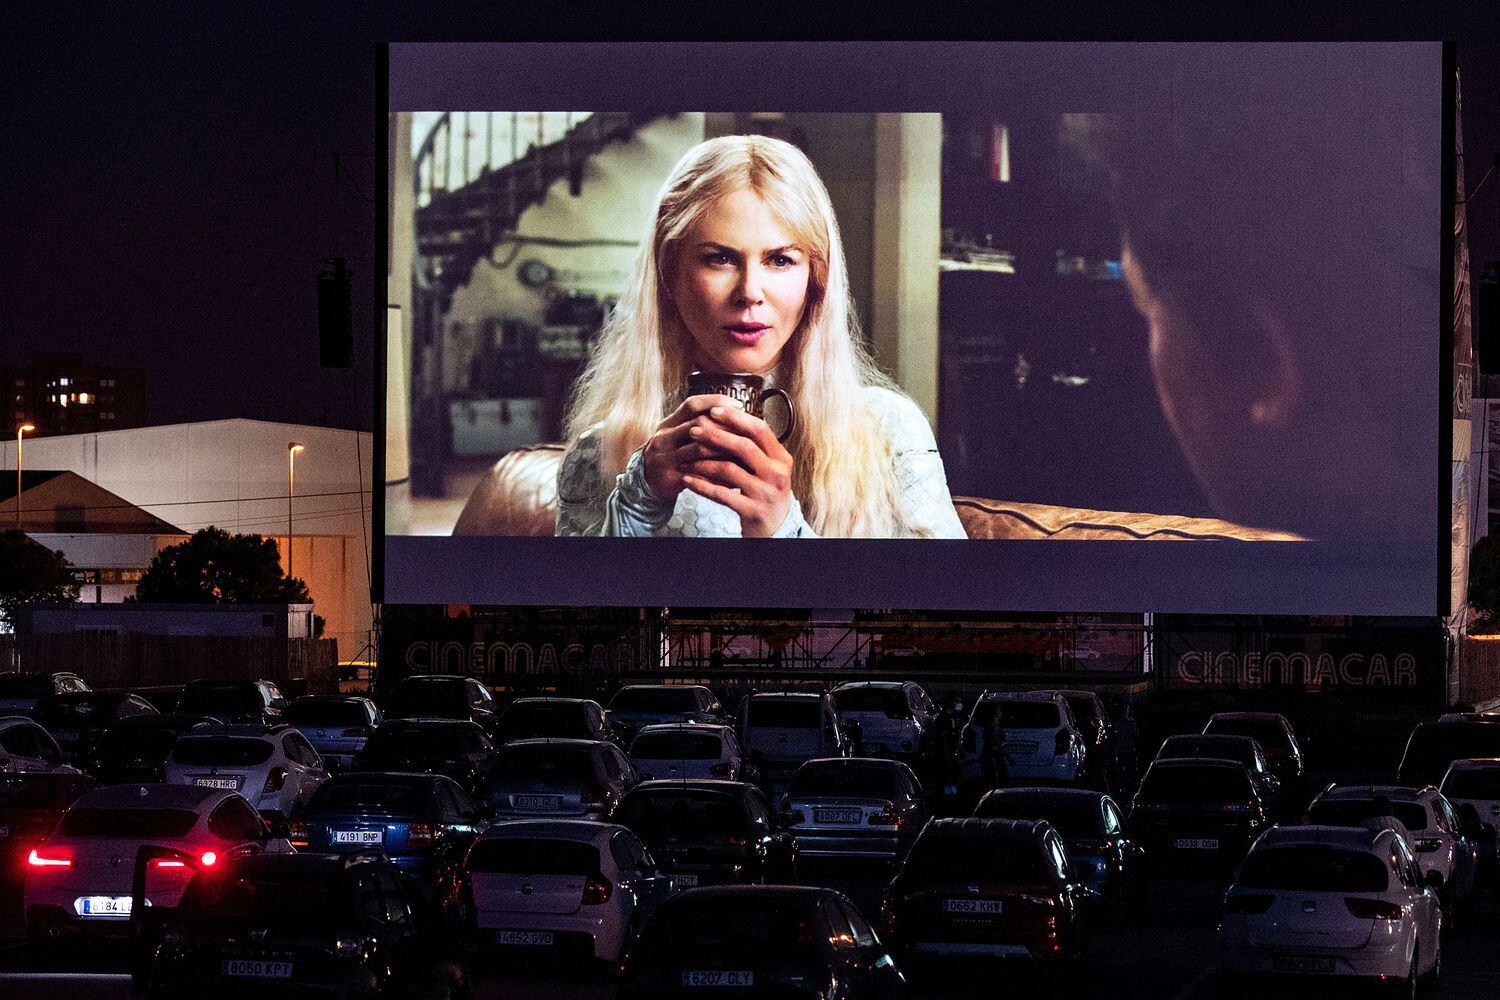 Un cine al aire libre de Alicante proyecta 'Aquaman', con Nicole Kidman, el pasado verano.